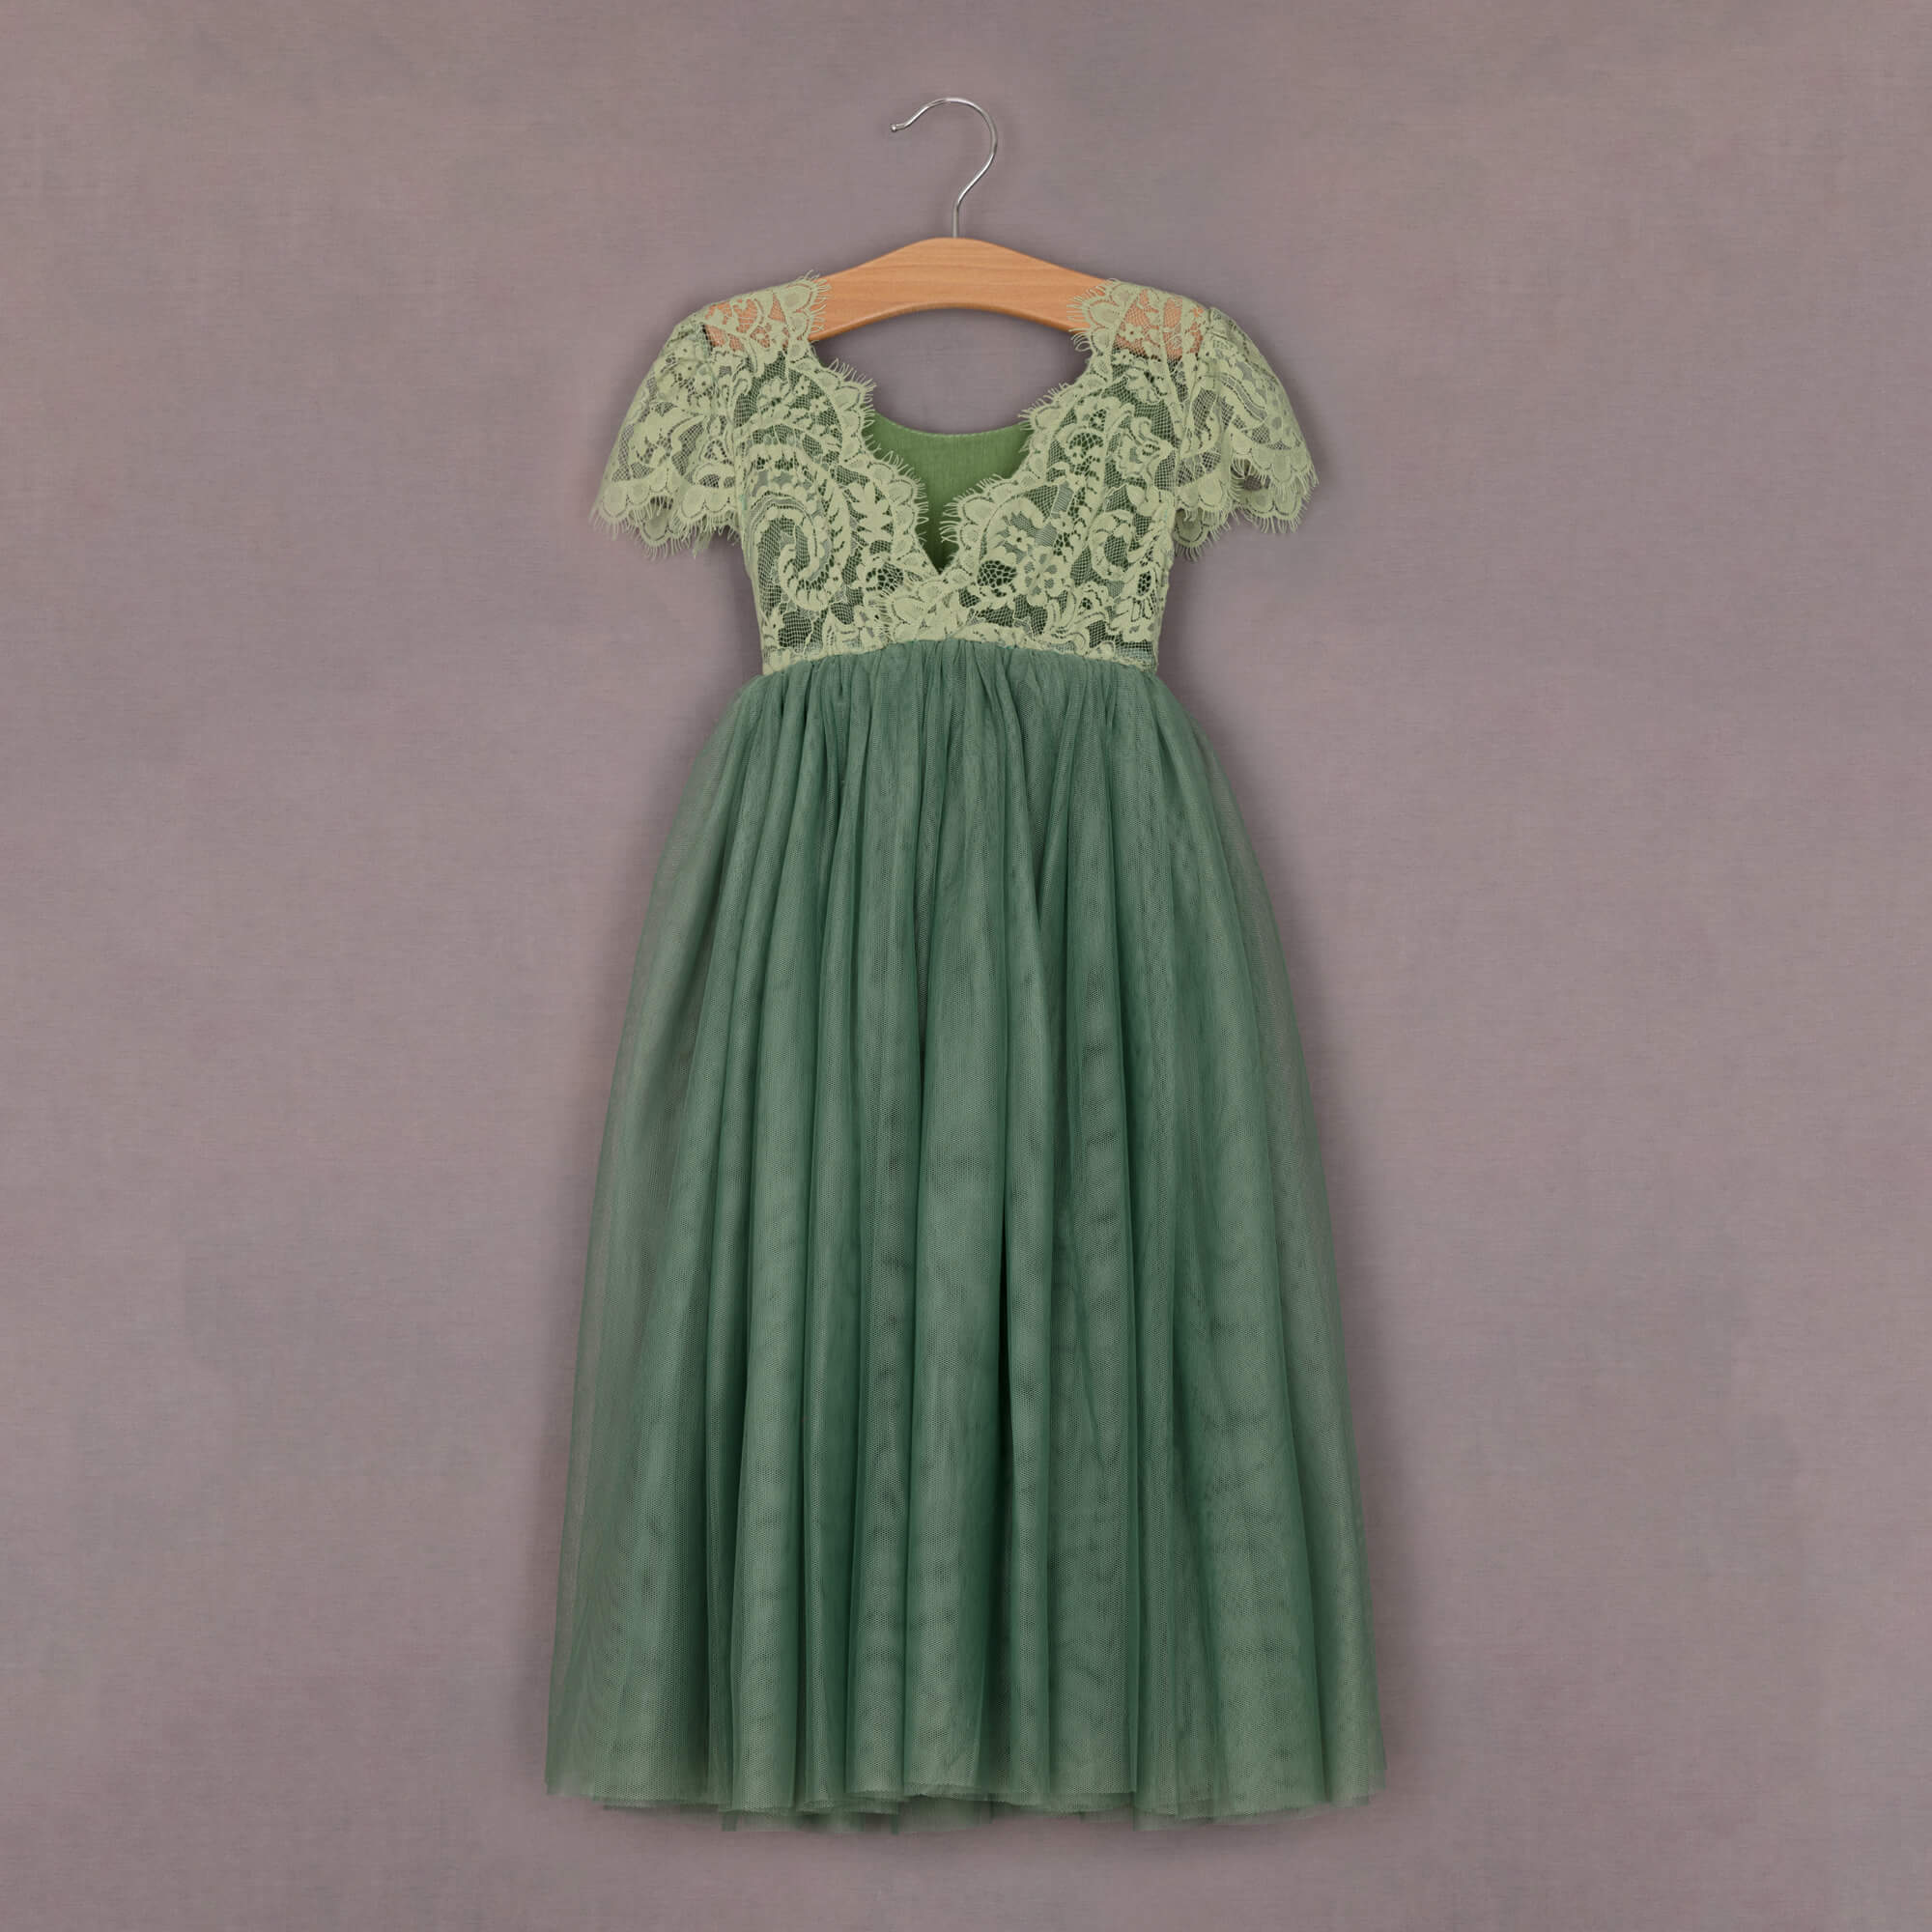 Baby Bohemian Flutter Dress - Fern Lace